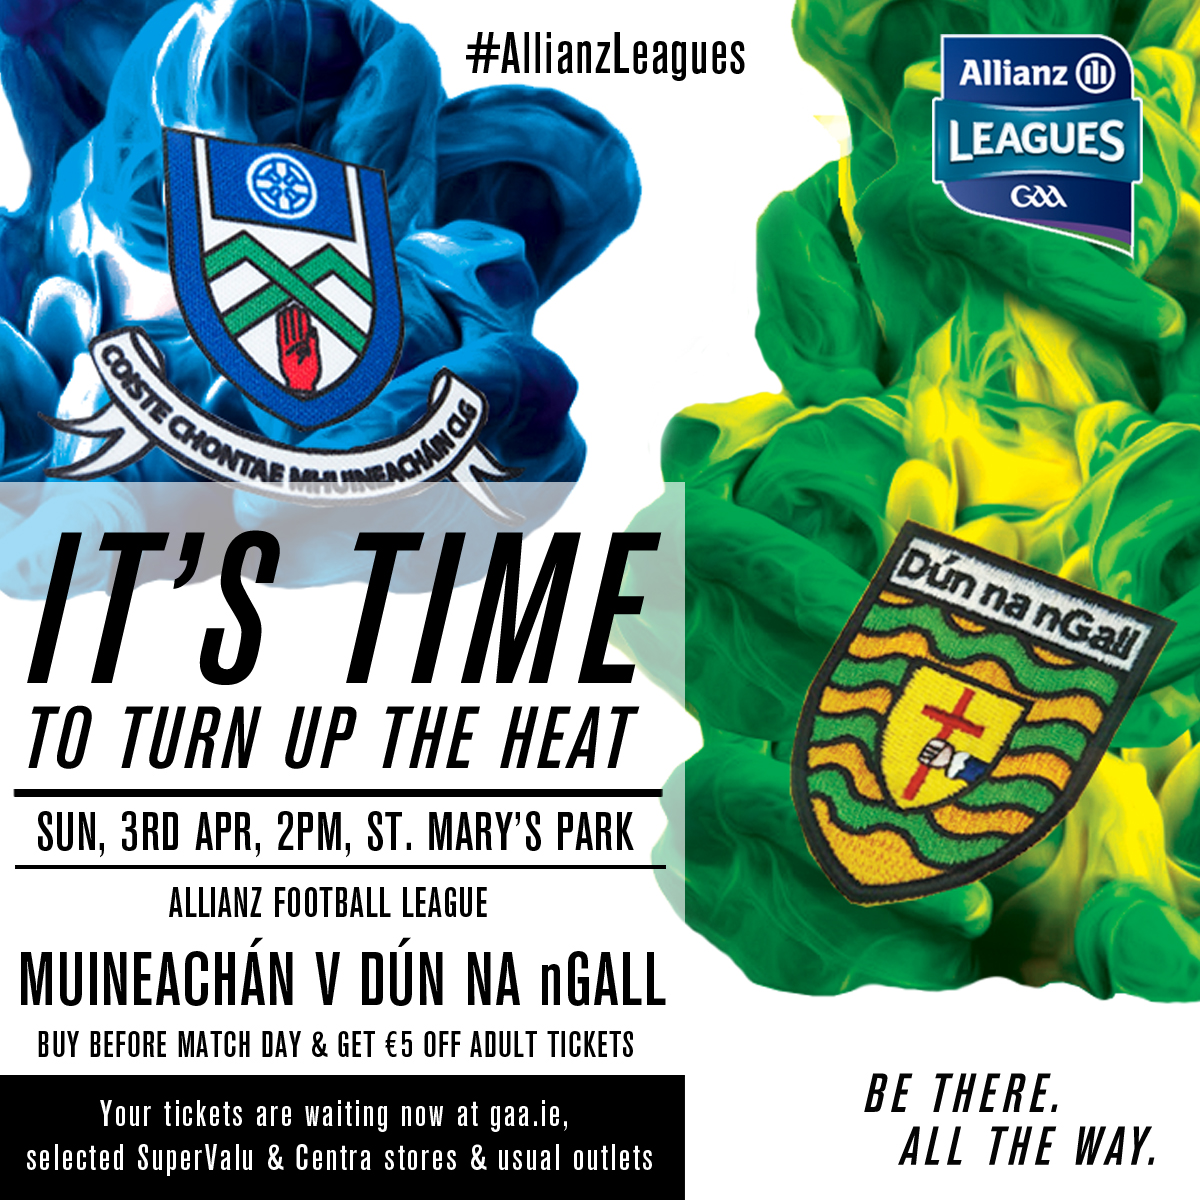 Monaghan v Donegal Ticket Details